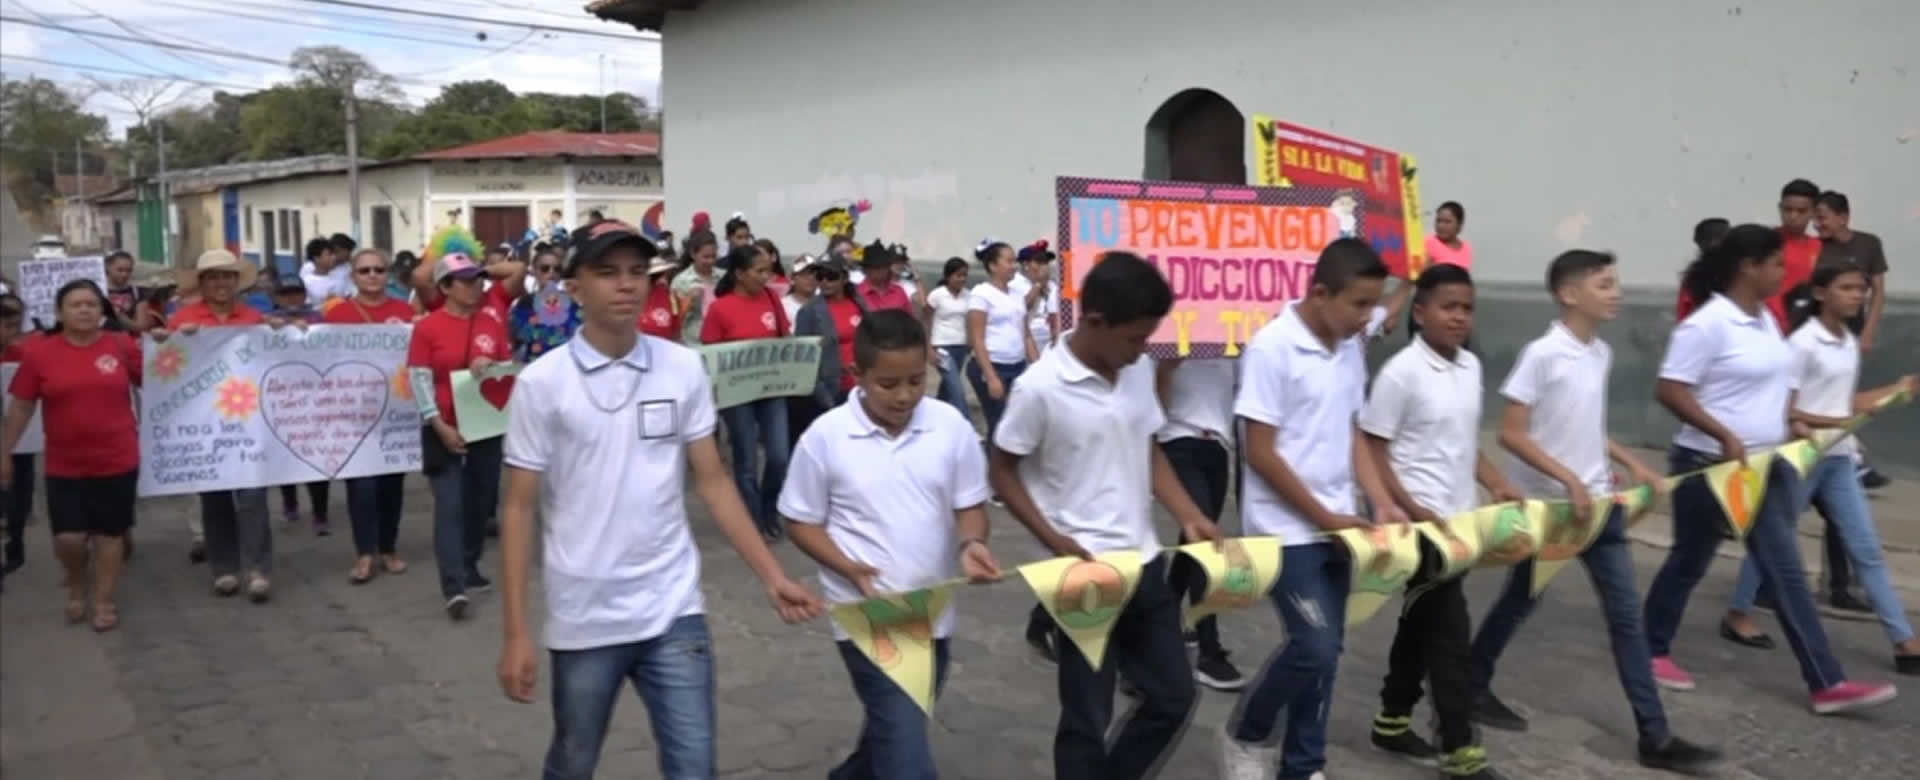 Colorido carnaval de jóvenes con el lema “Mi Vida sin Drogas” en Ocotal